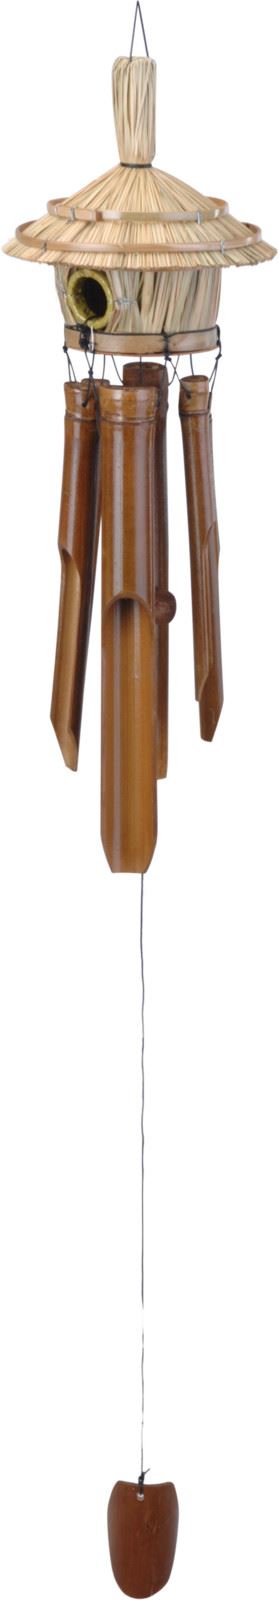 windgong-bamboe-met-vogelhuisje-h45cm